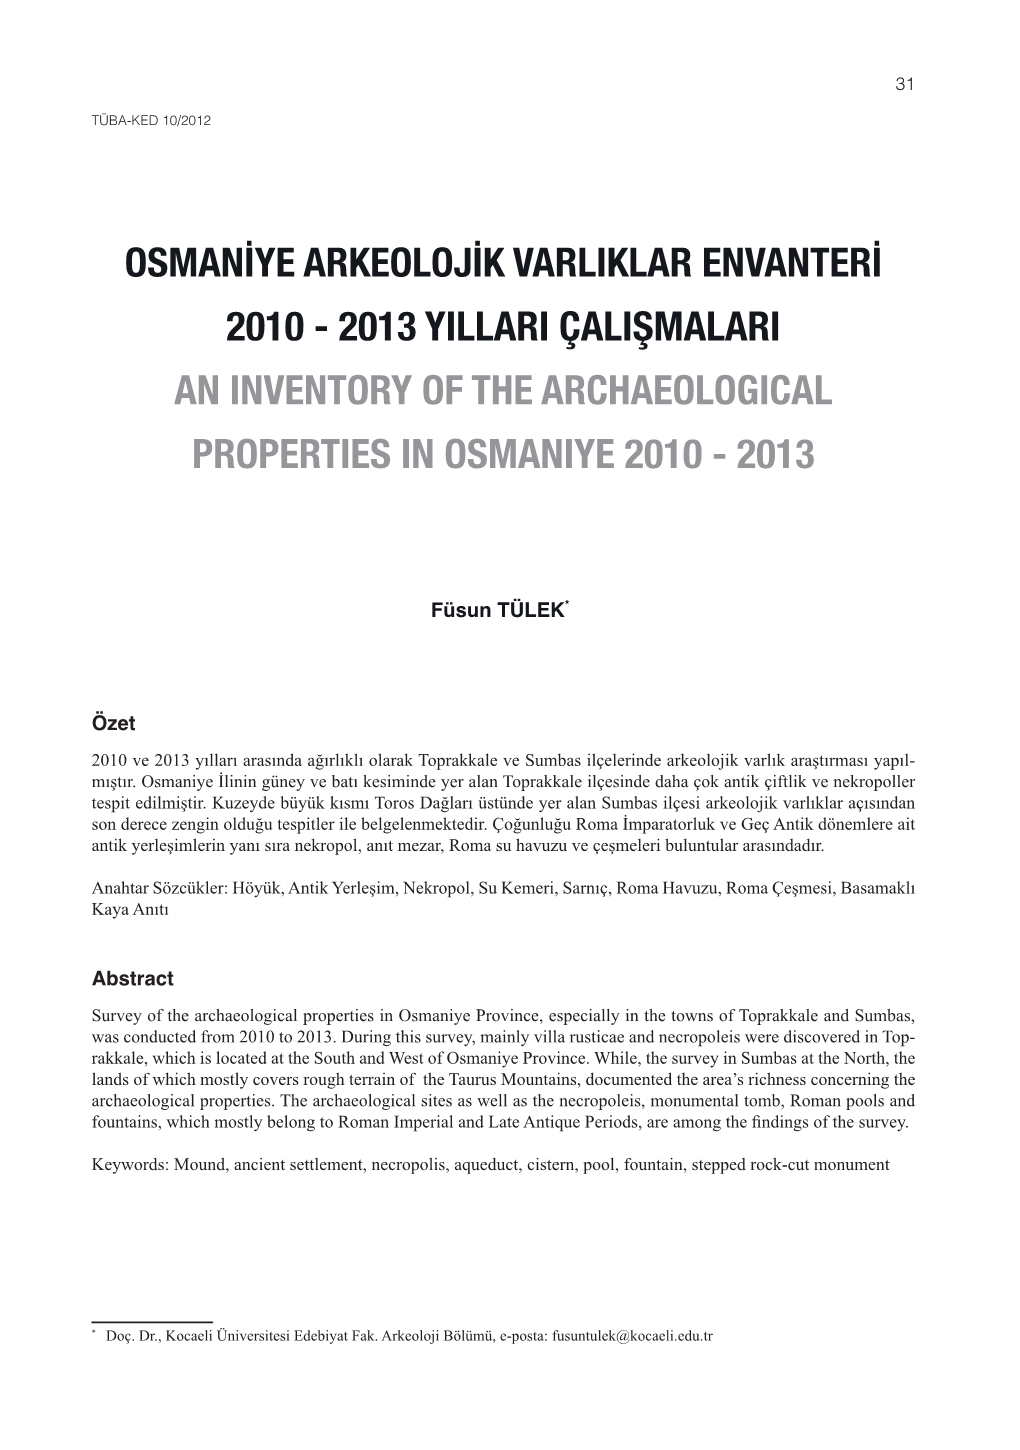 Osmaniye Arkeolojik Varliklar Envanteri 2010 - 2013 Yillari Çalişmalari an Inventory of the Archaeological Properties in Osmaniye 2010 - 2013